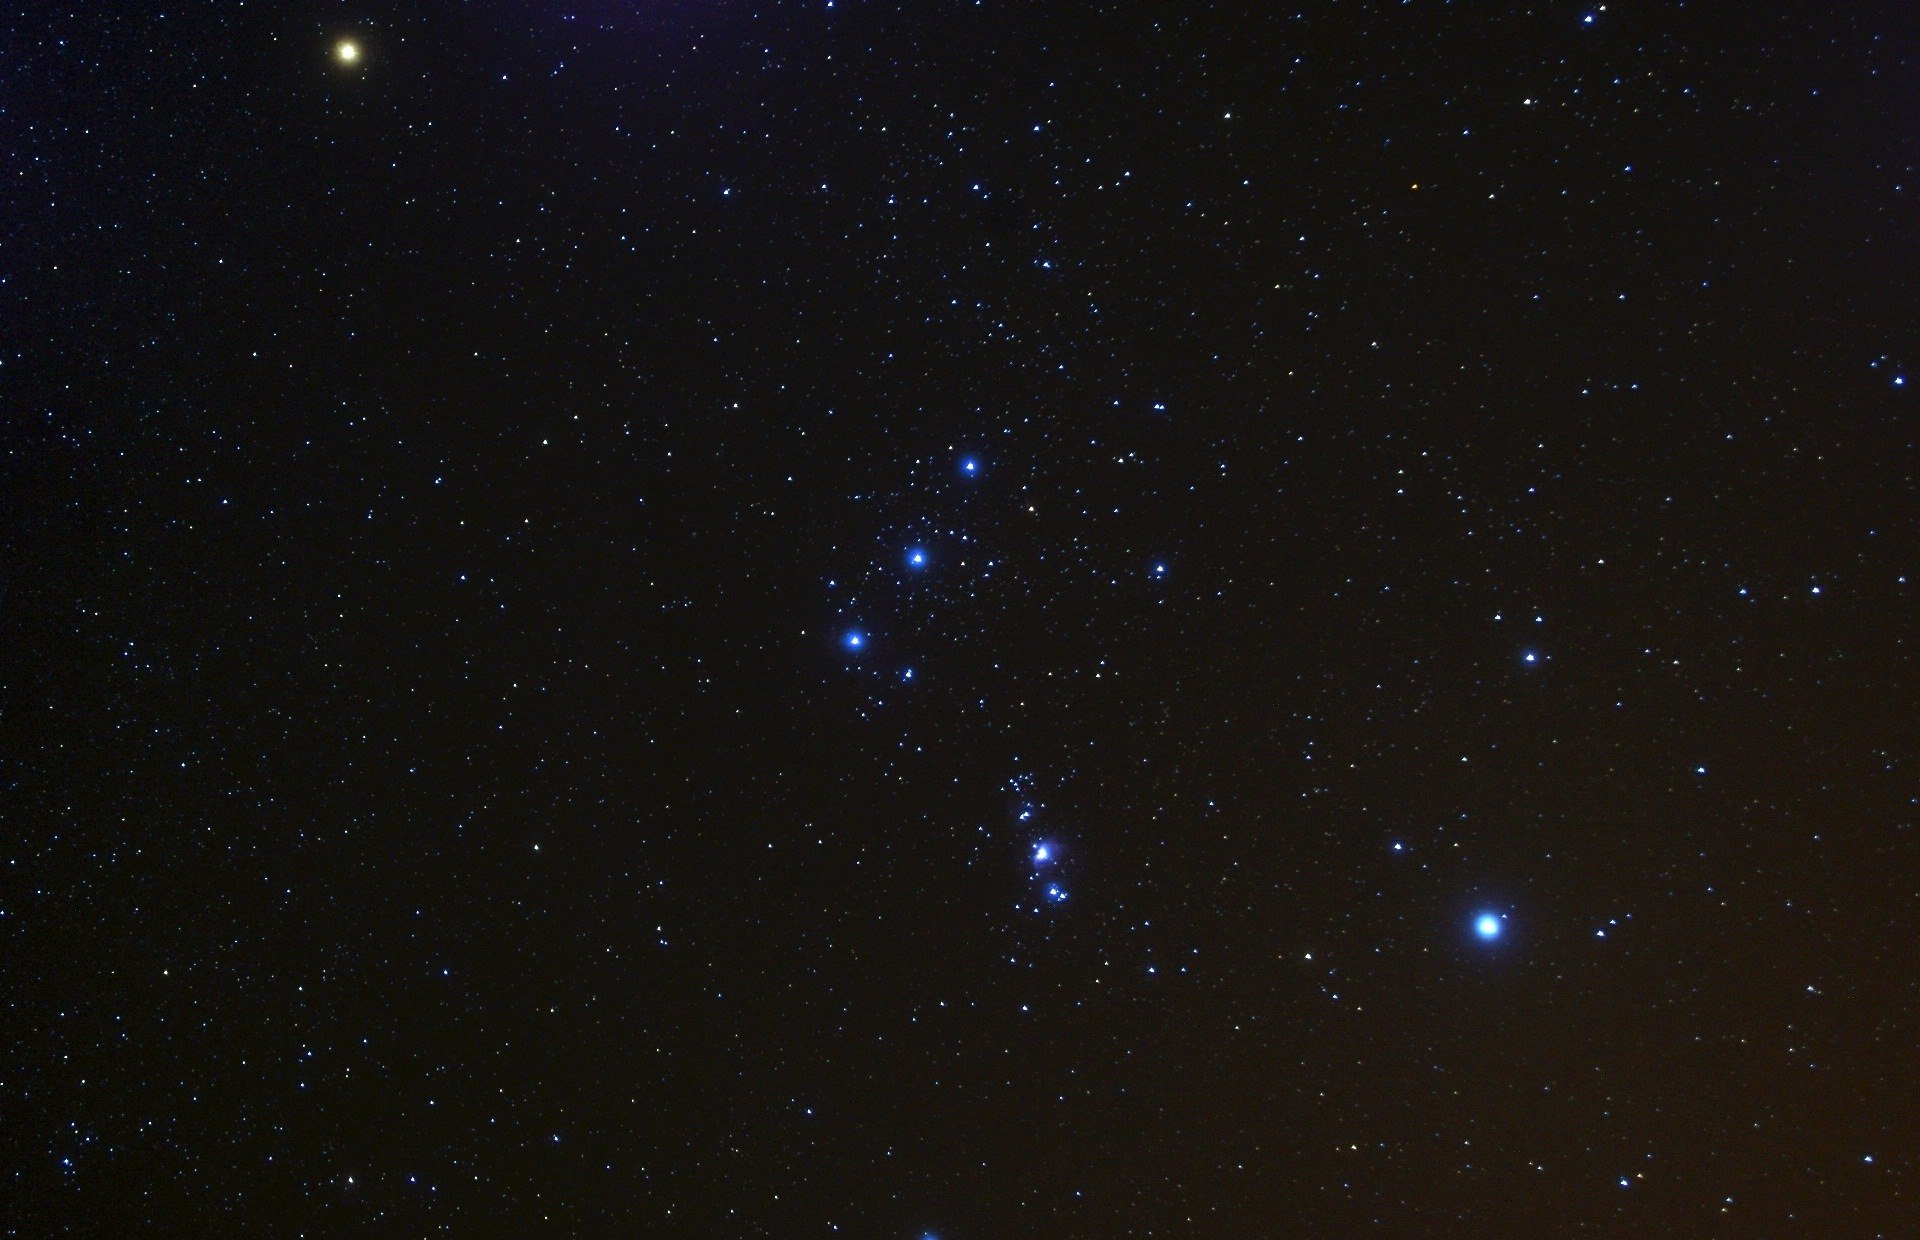 Три звезды Альнитак (ζ Ориона), Альнилам (ε Ориона), Минтака (δ Ориона) в центре снимка - Пояс Ориона